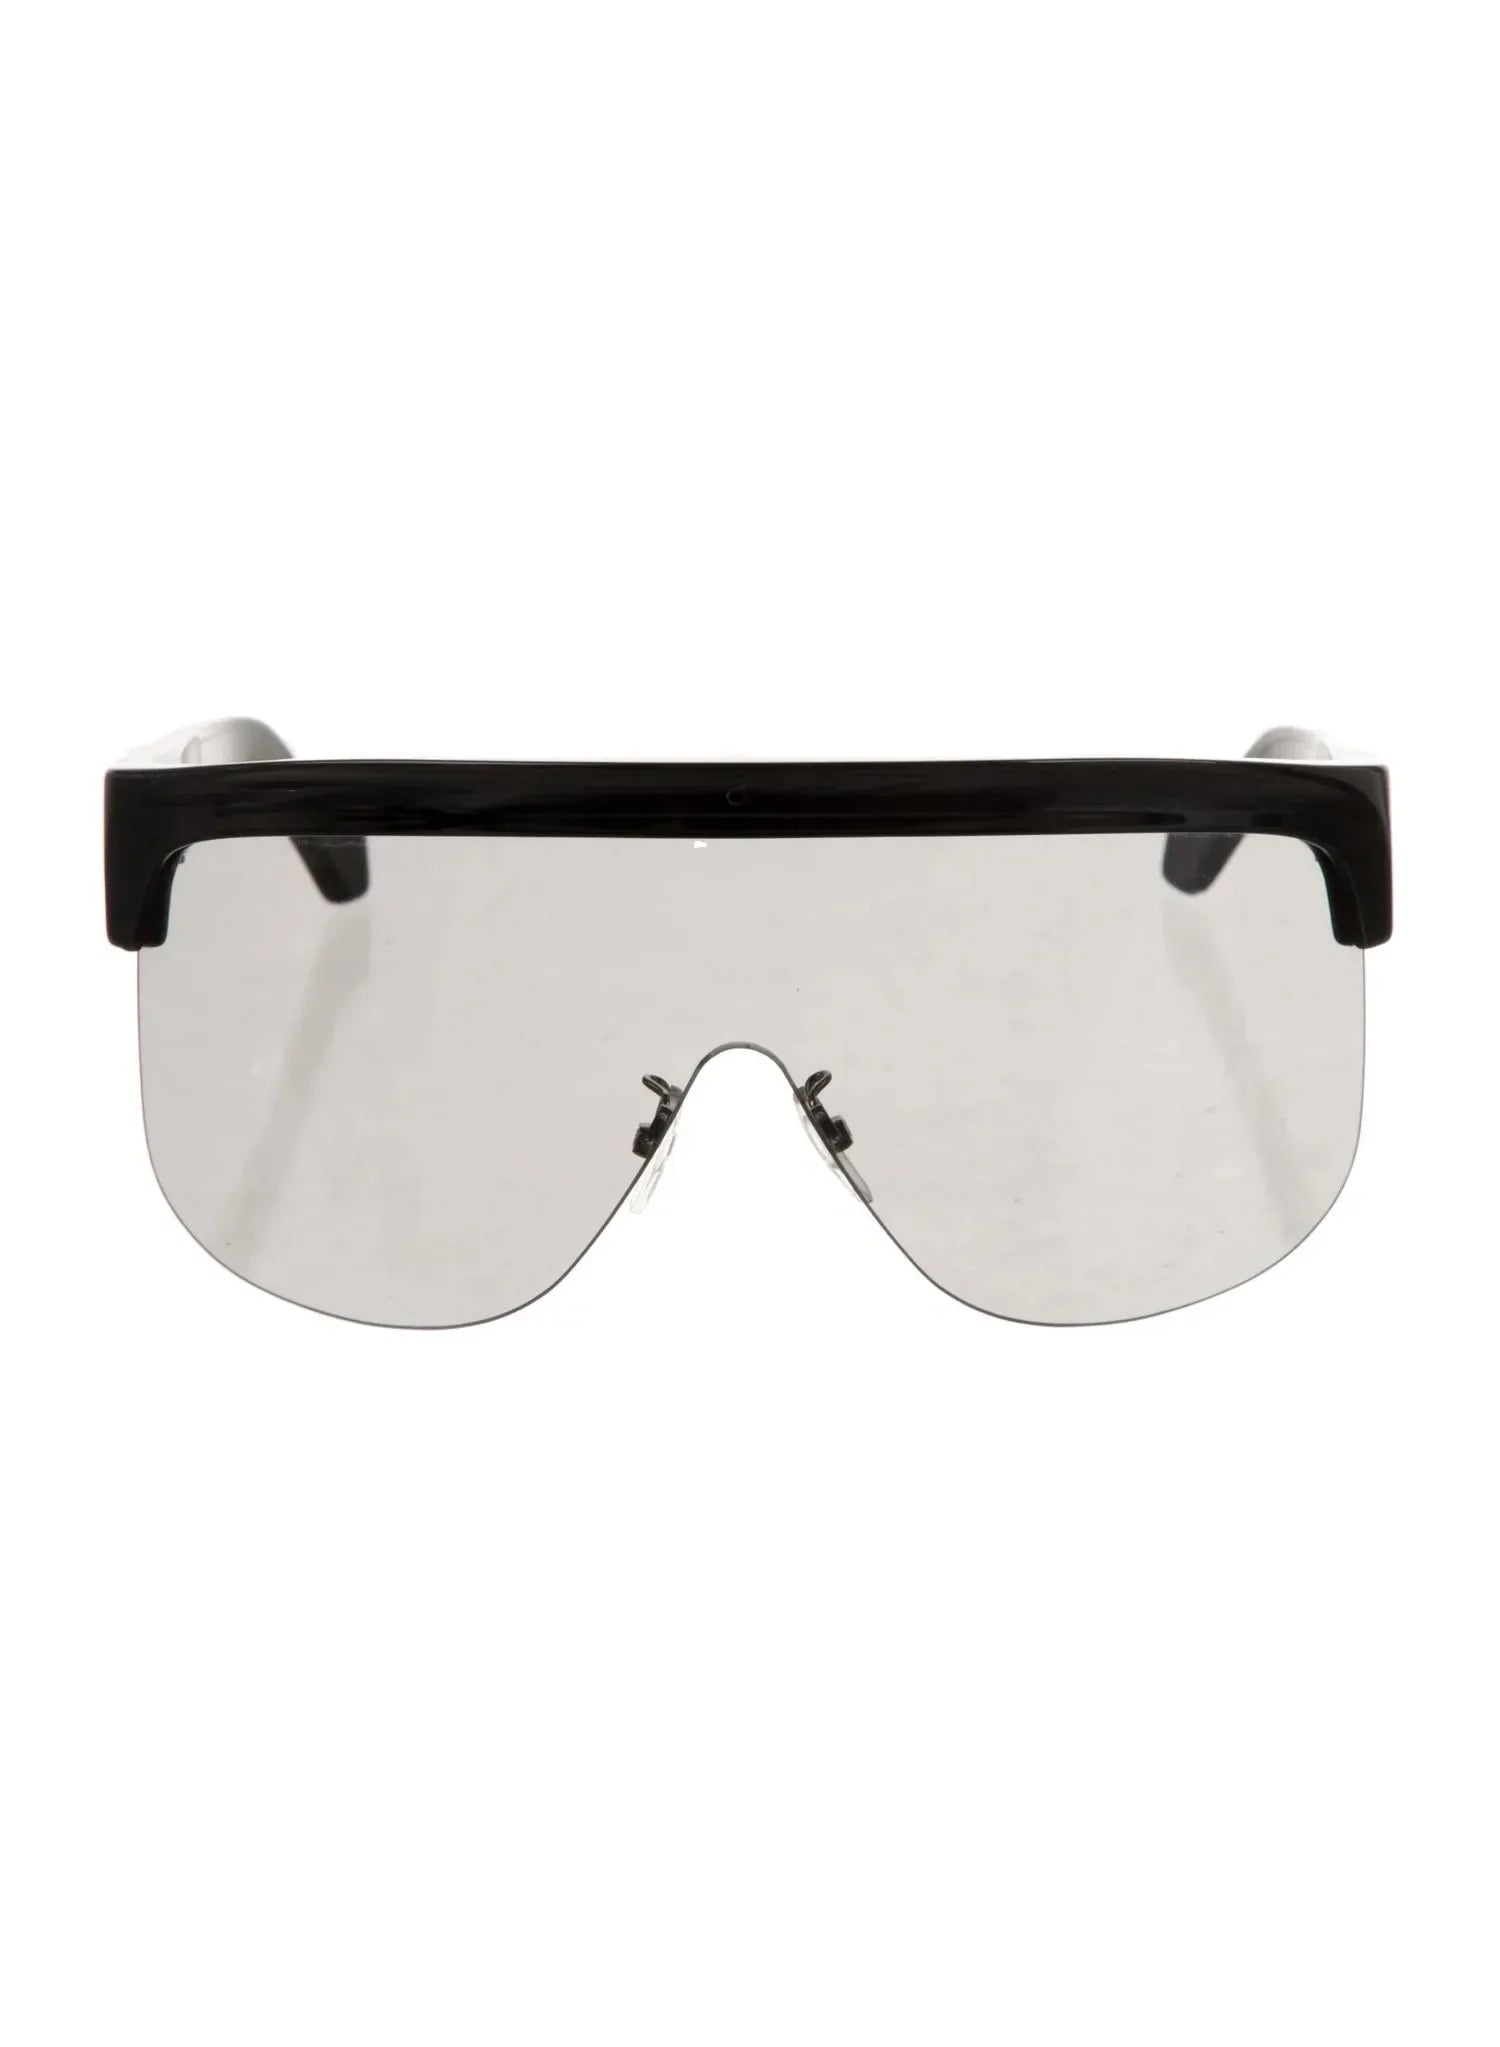 Shield Mirrored Sunglasses